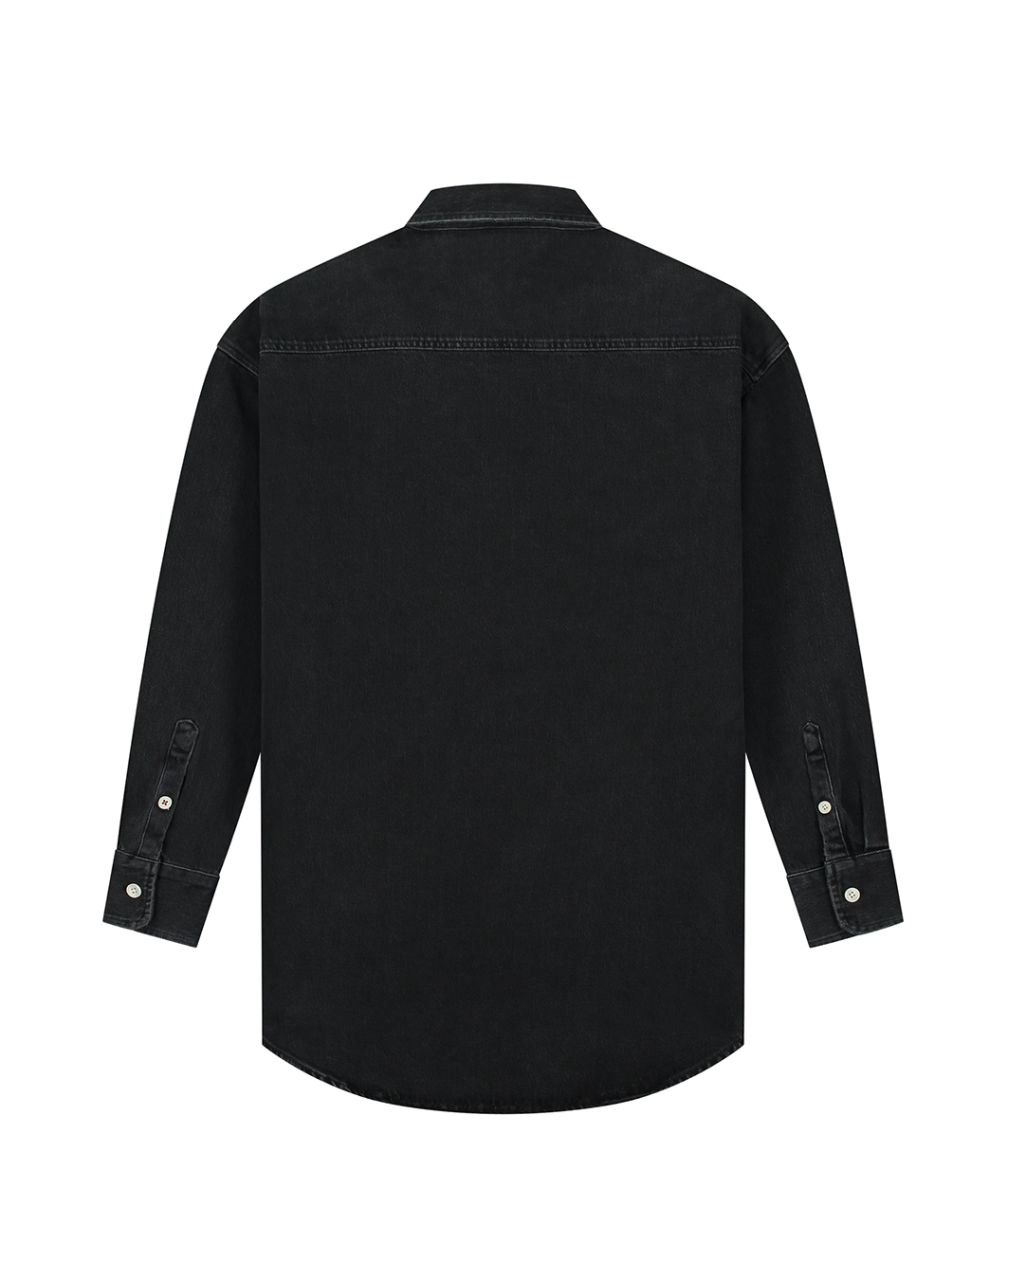 Selina Black Shirt Washed Black M